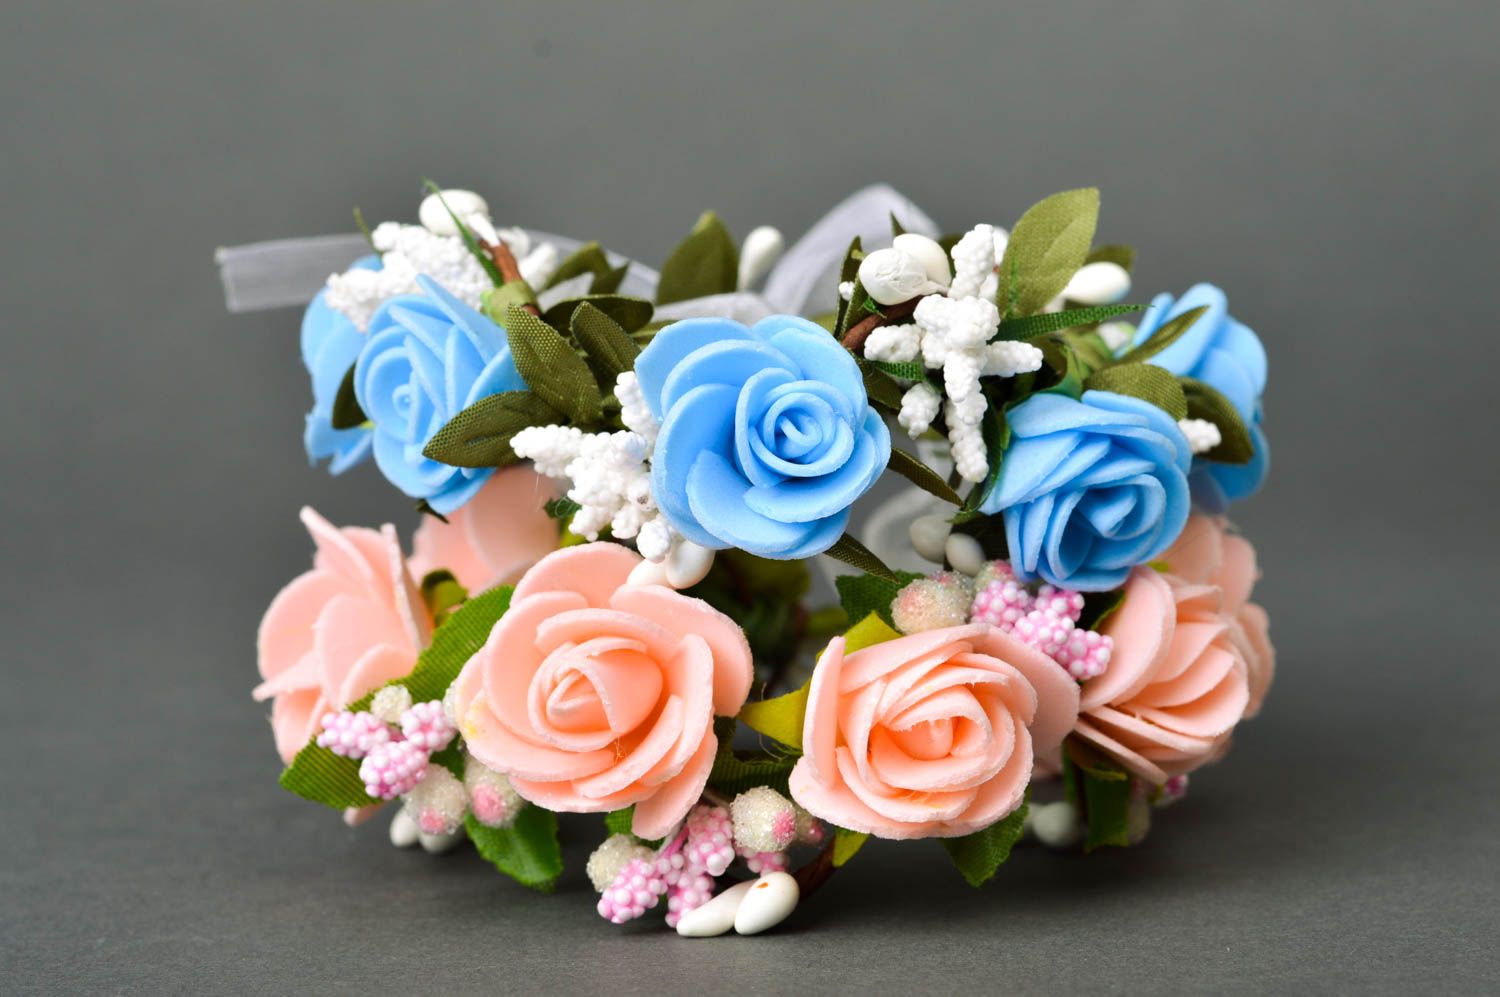 Handmade wrist bracelet flower bracelets designer accessories for women photo 3